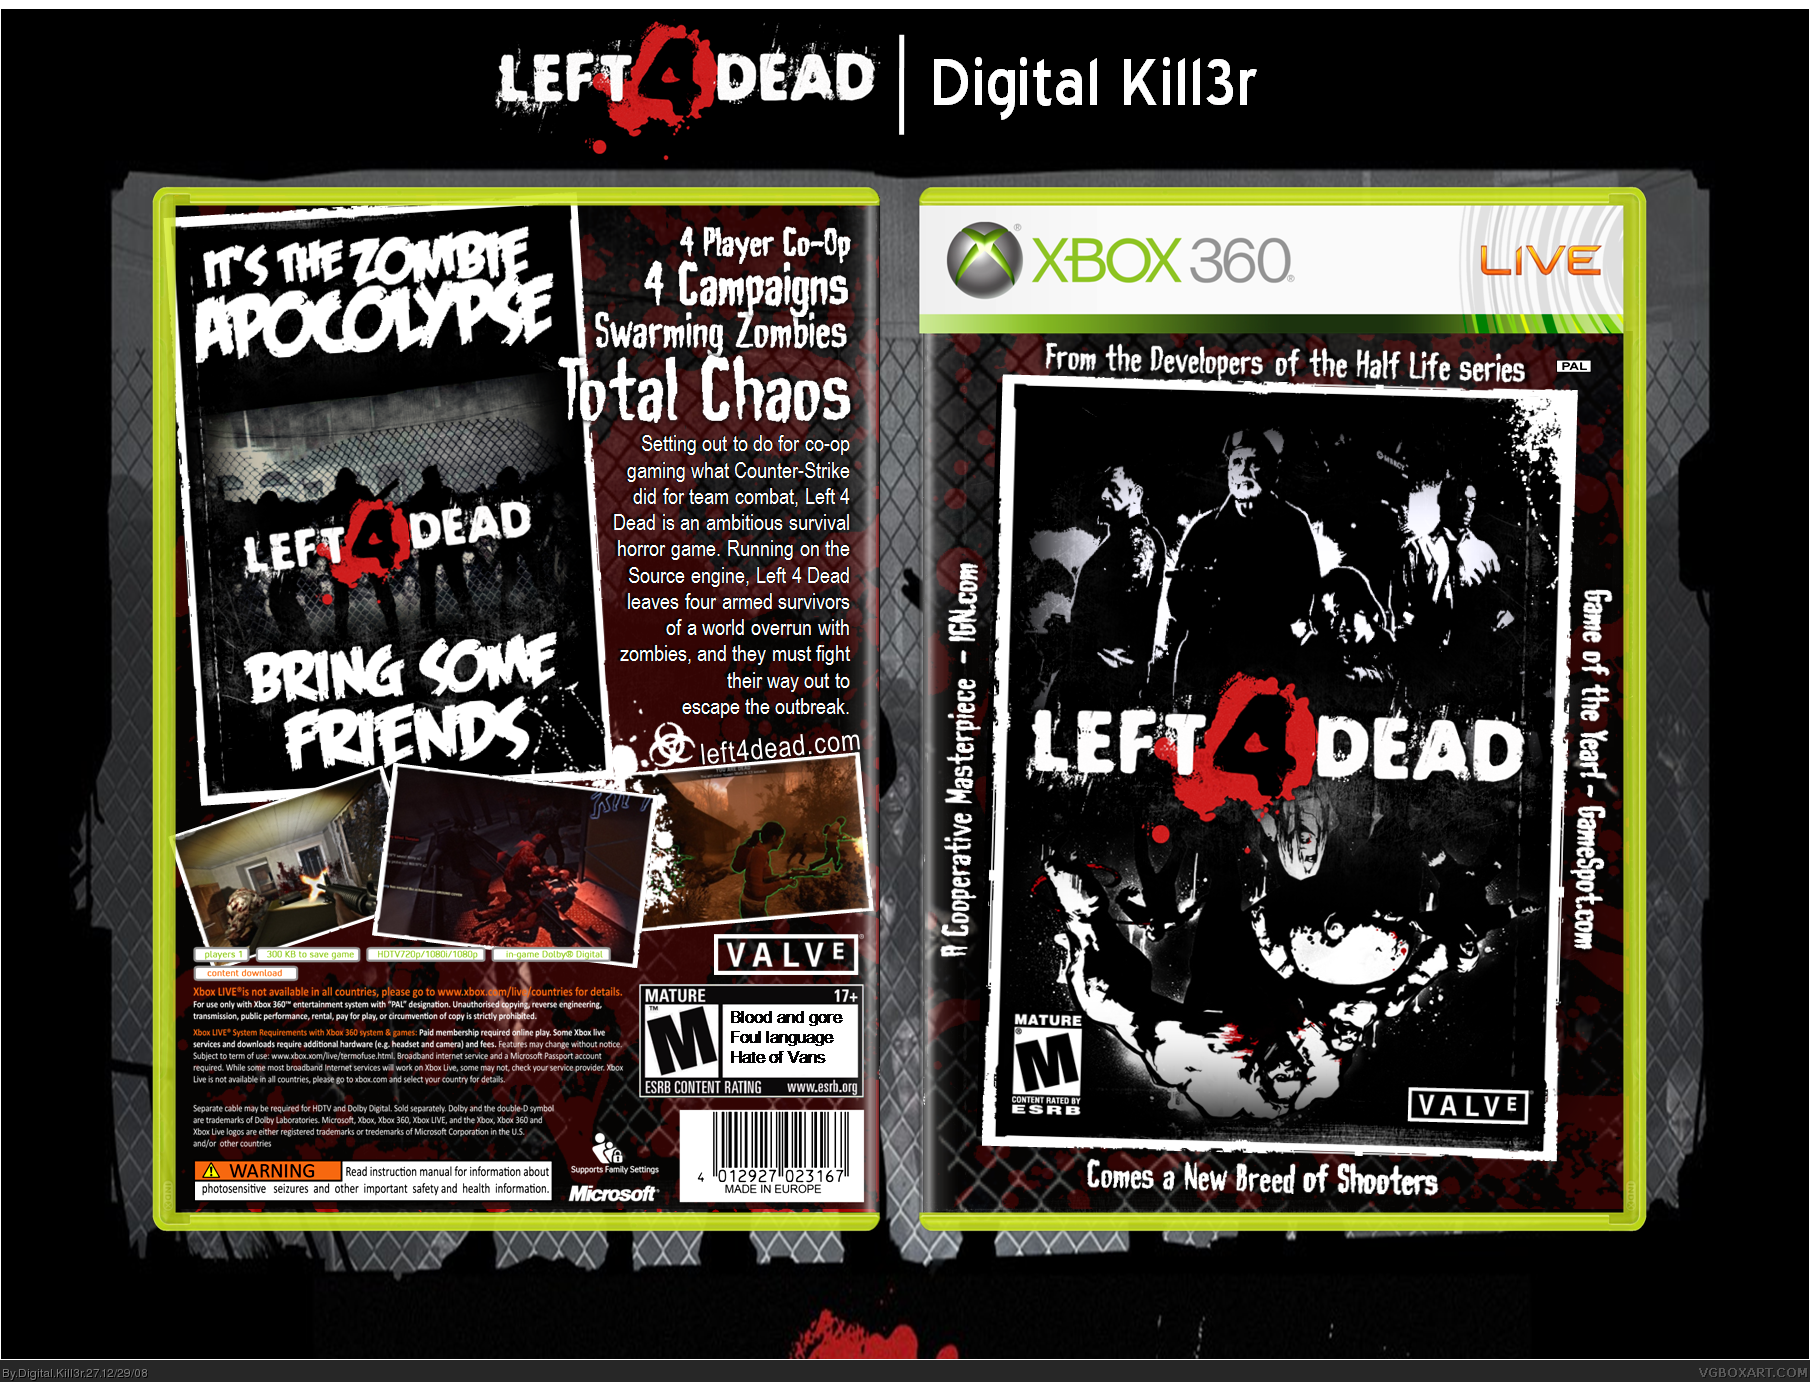 Left 4 Dead box cover